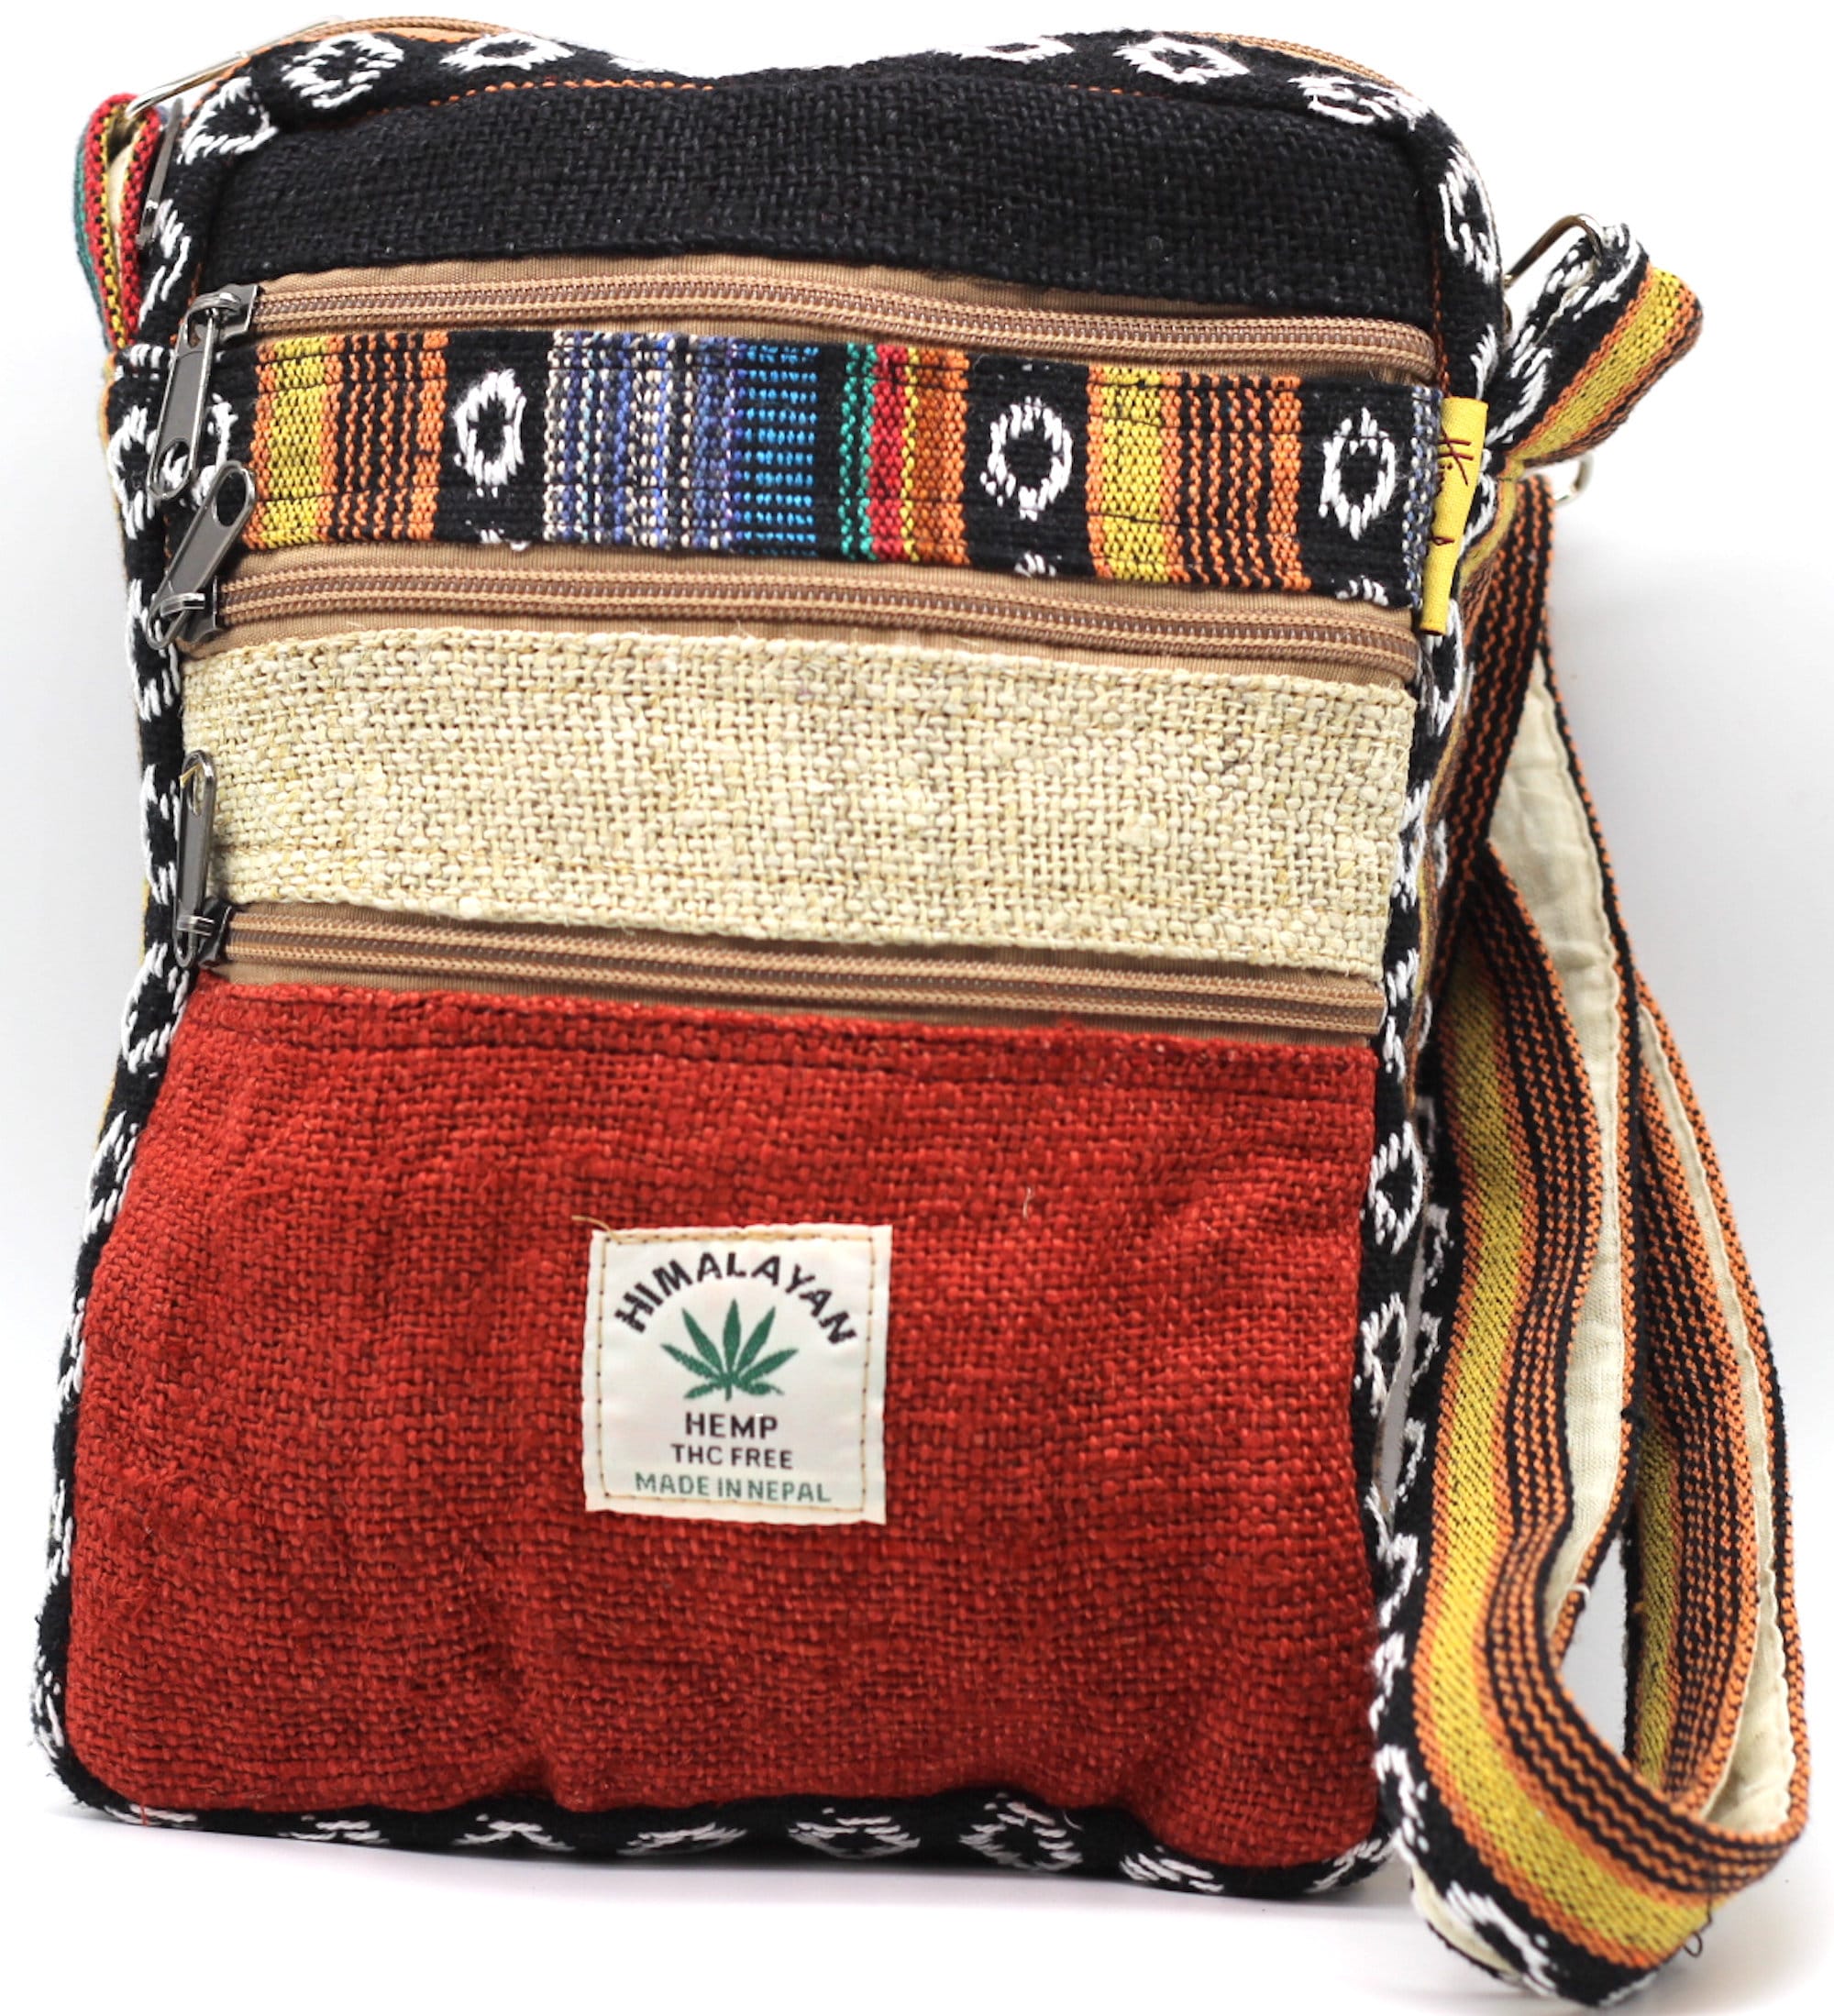 Boho Schultertasche, Hippie Tasche aus Nepal - braun/rot